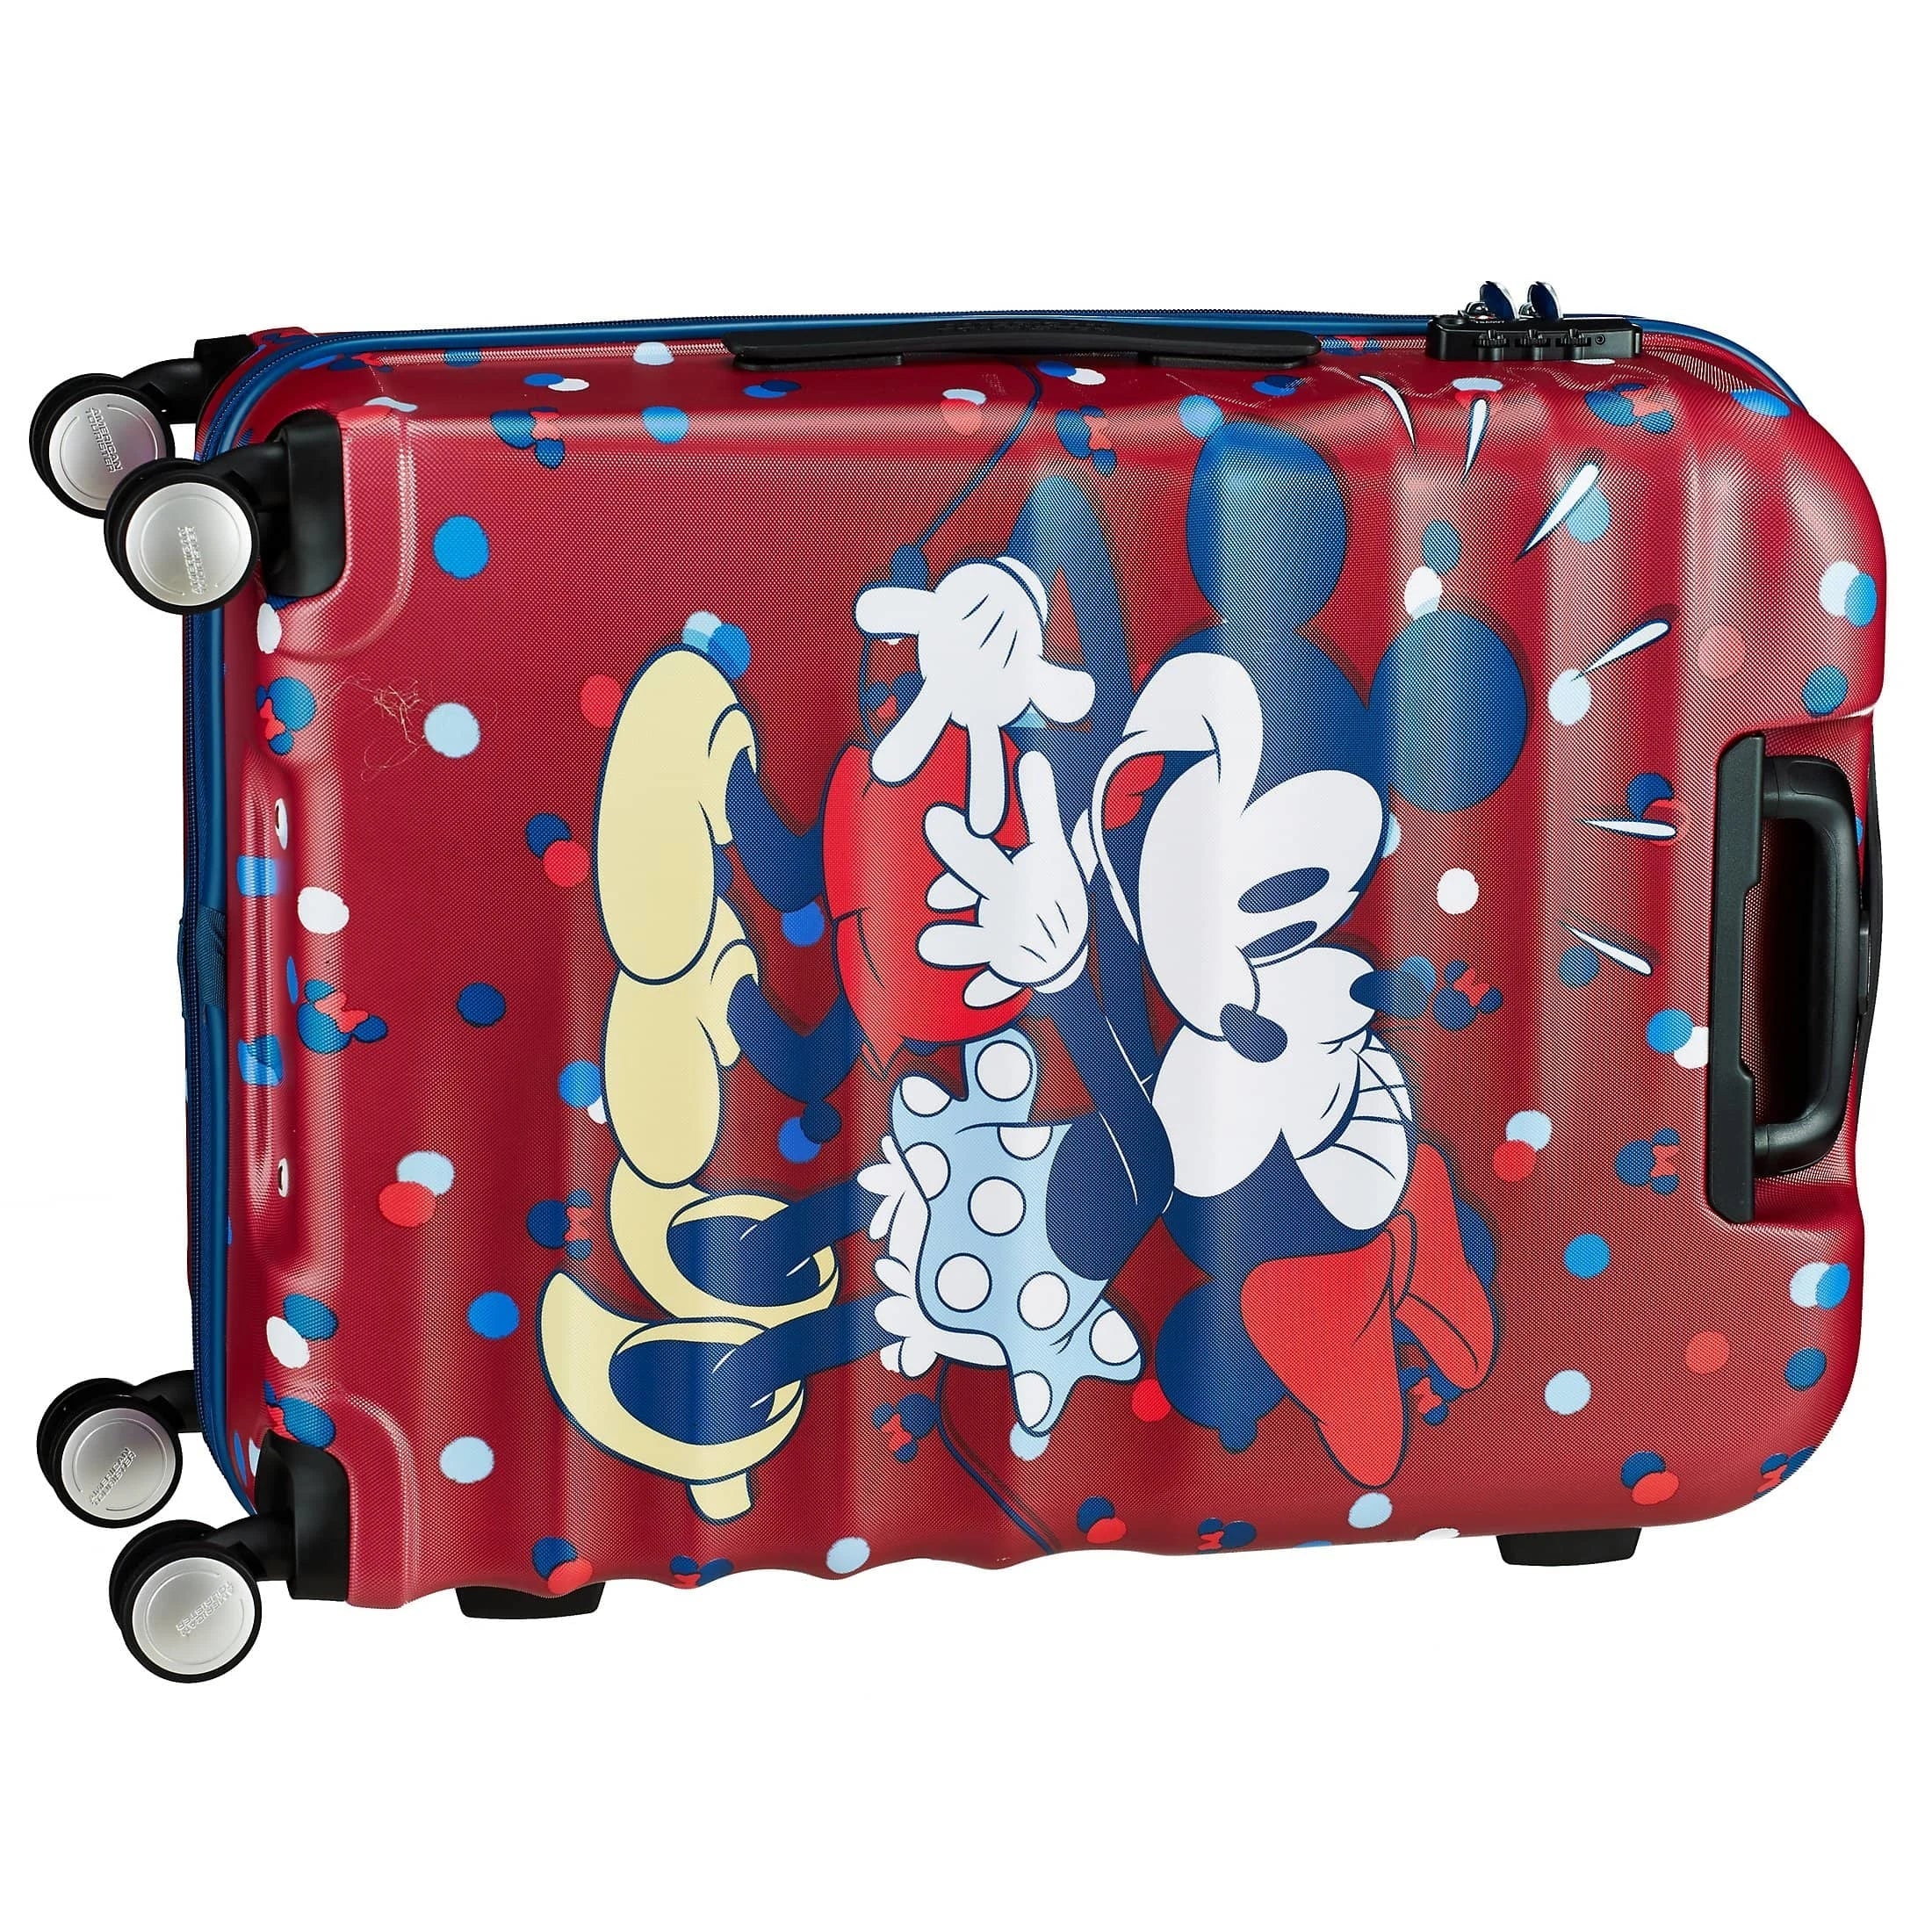 Tourister daisy American p - Disney 67 Wavebreaker cm 4-Rollen-Trolley